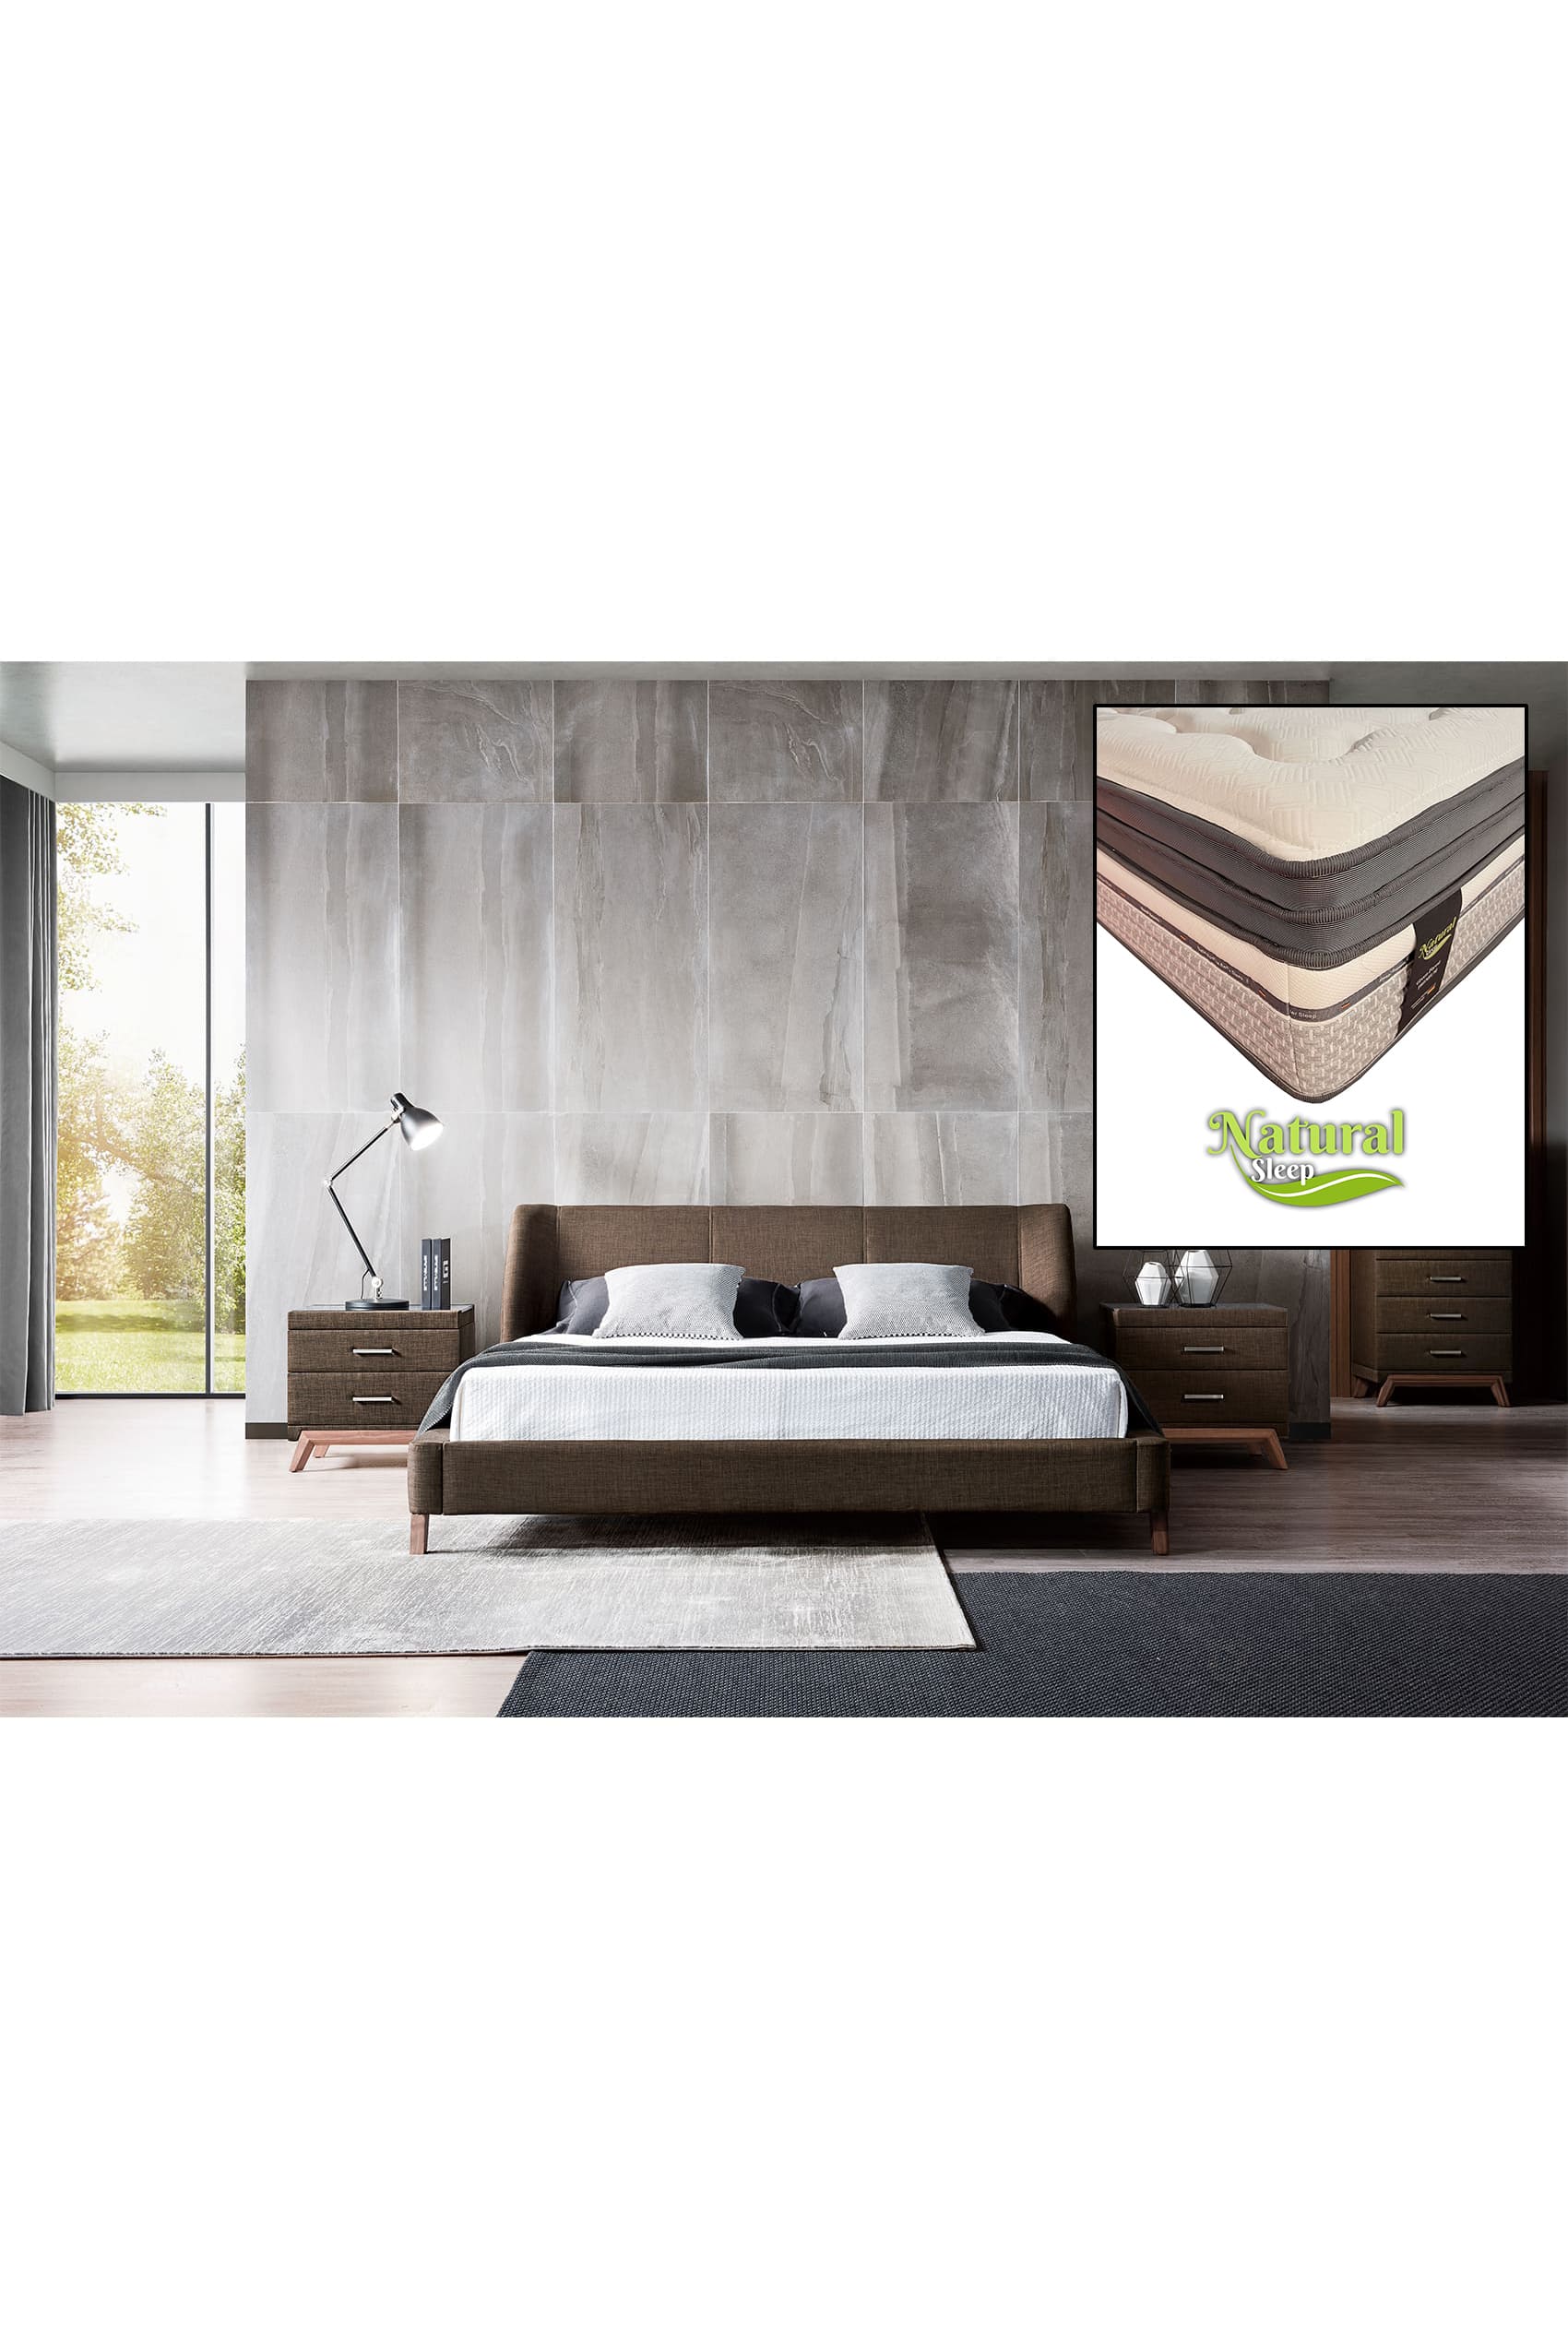 Ander Designer Bed Frame + Natural Sleep Green Forest